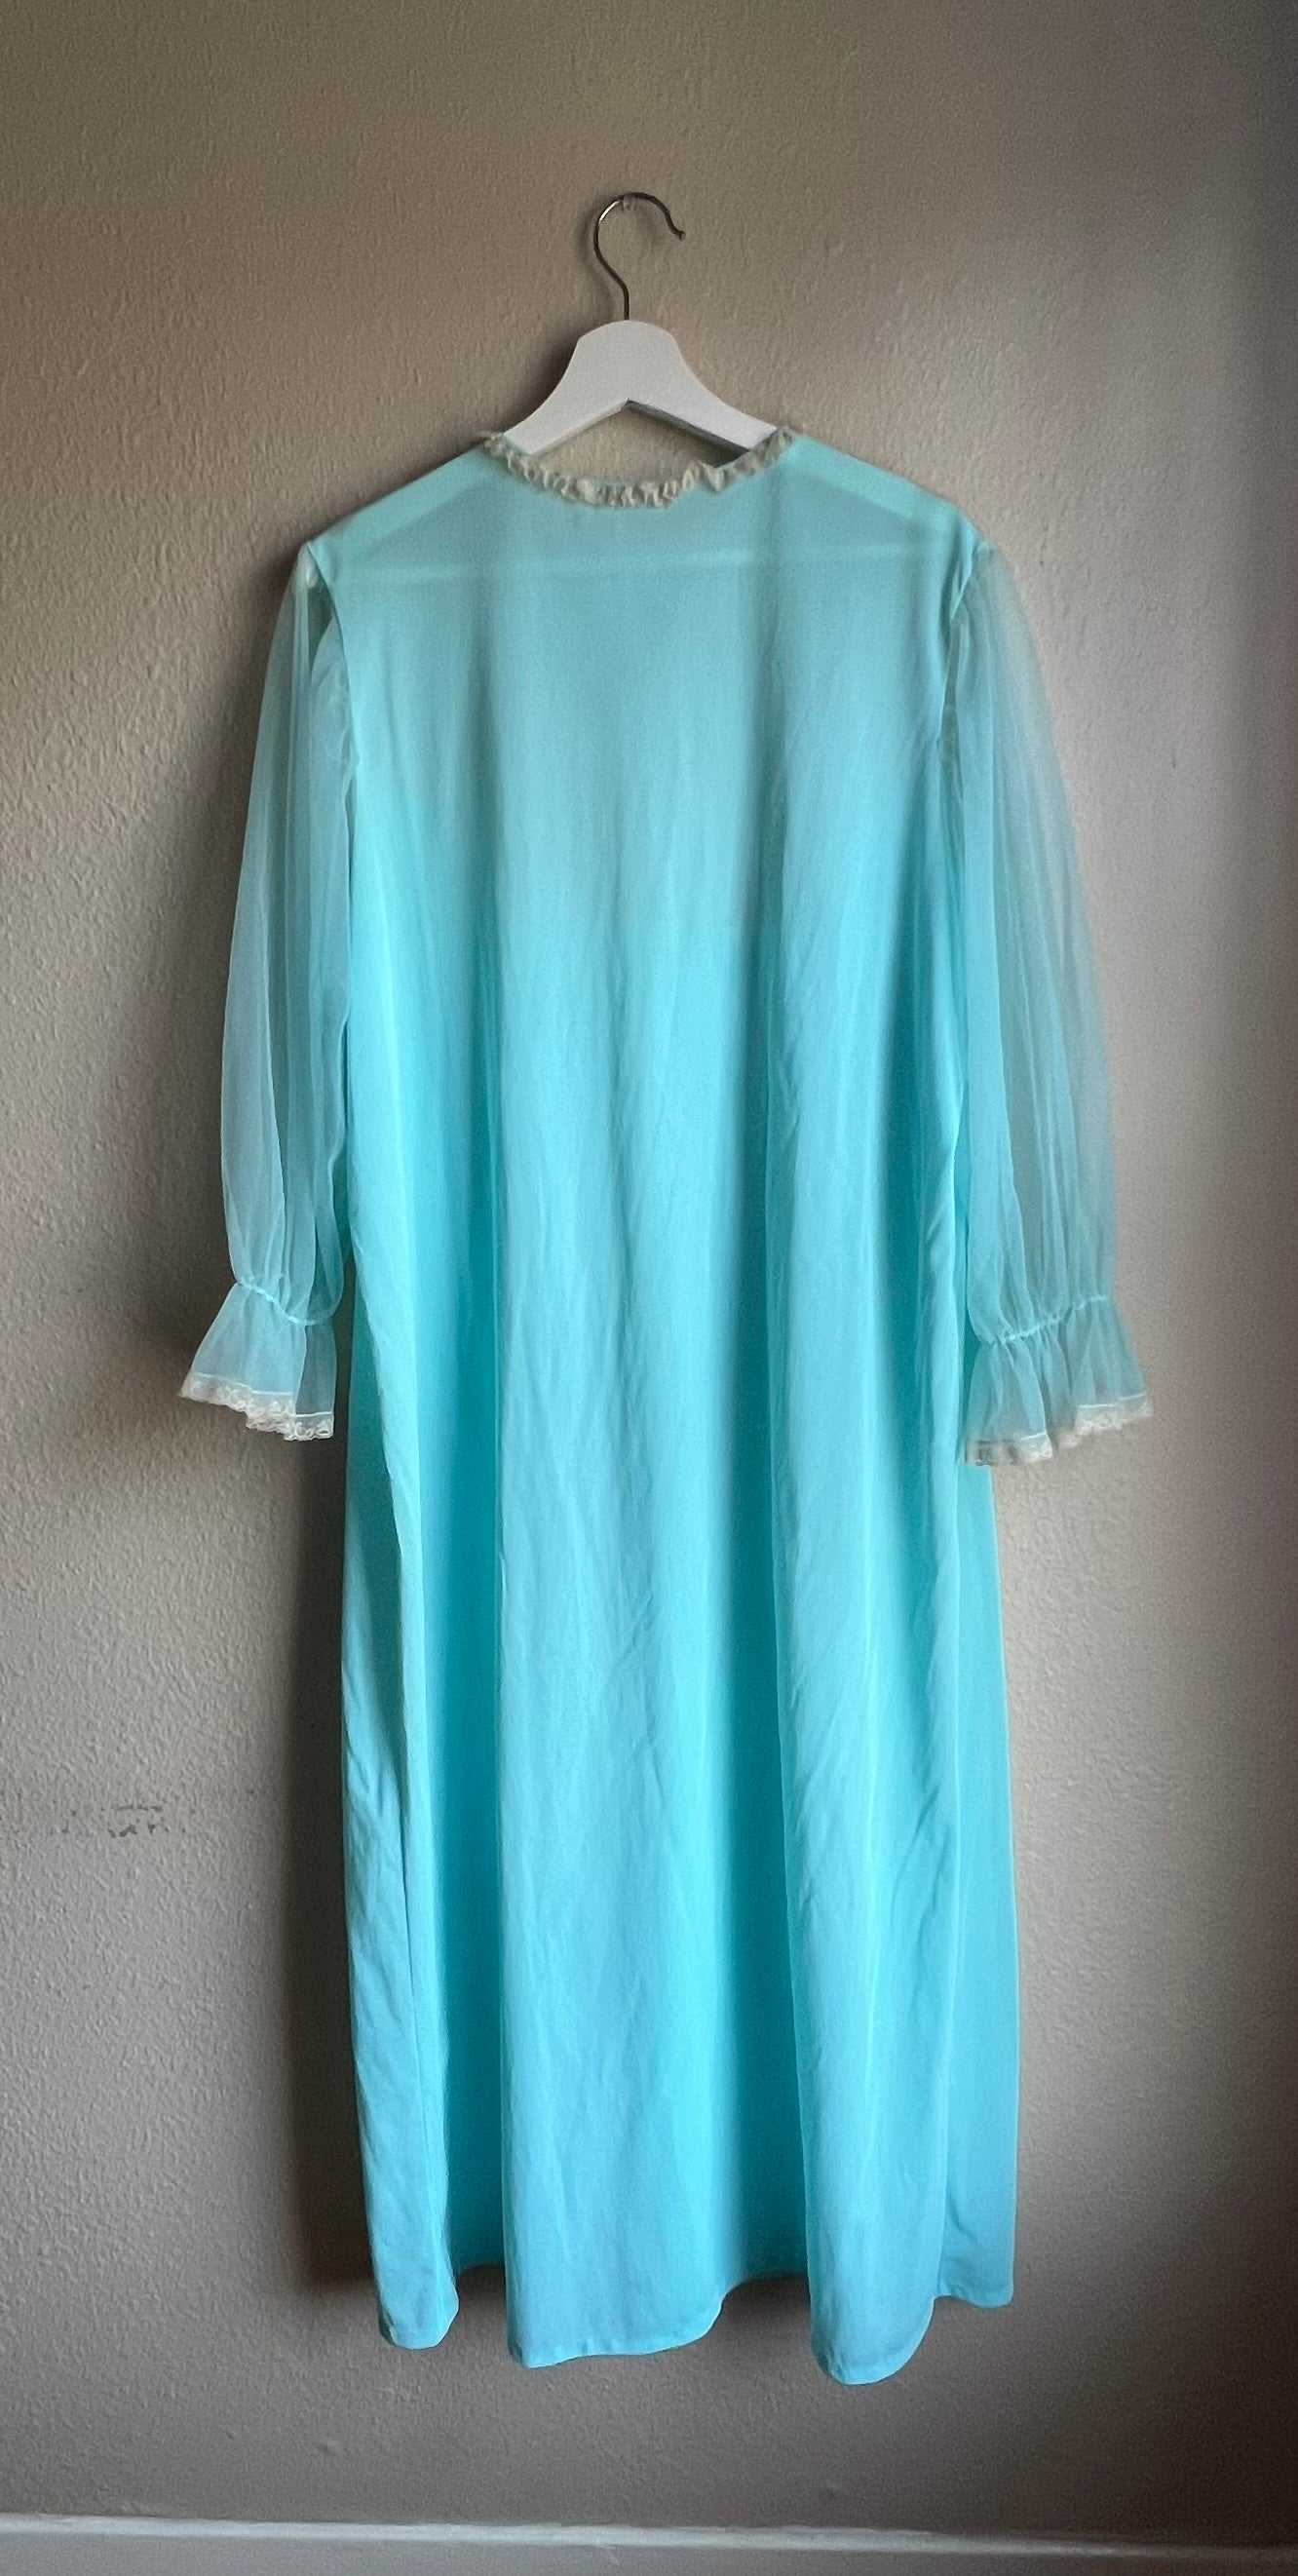 Blue Vintage Sleepwear Lingerie Dress